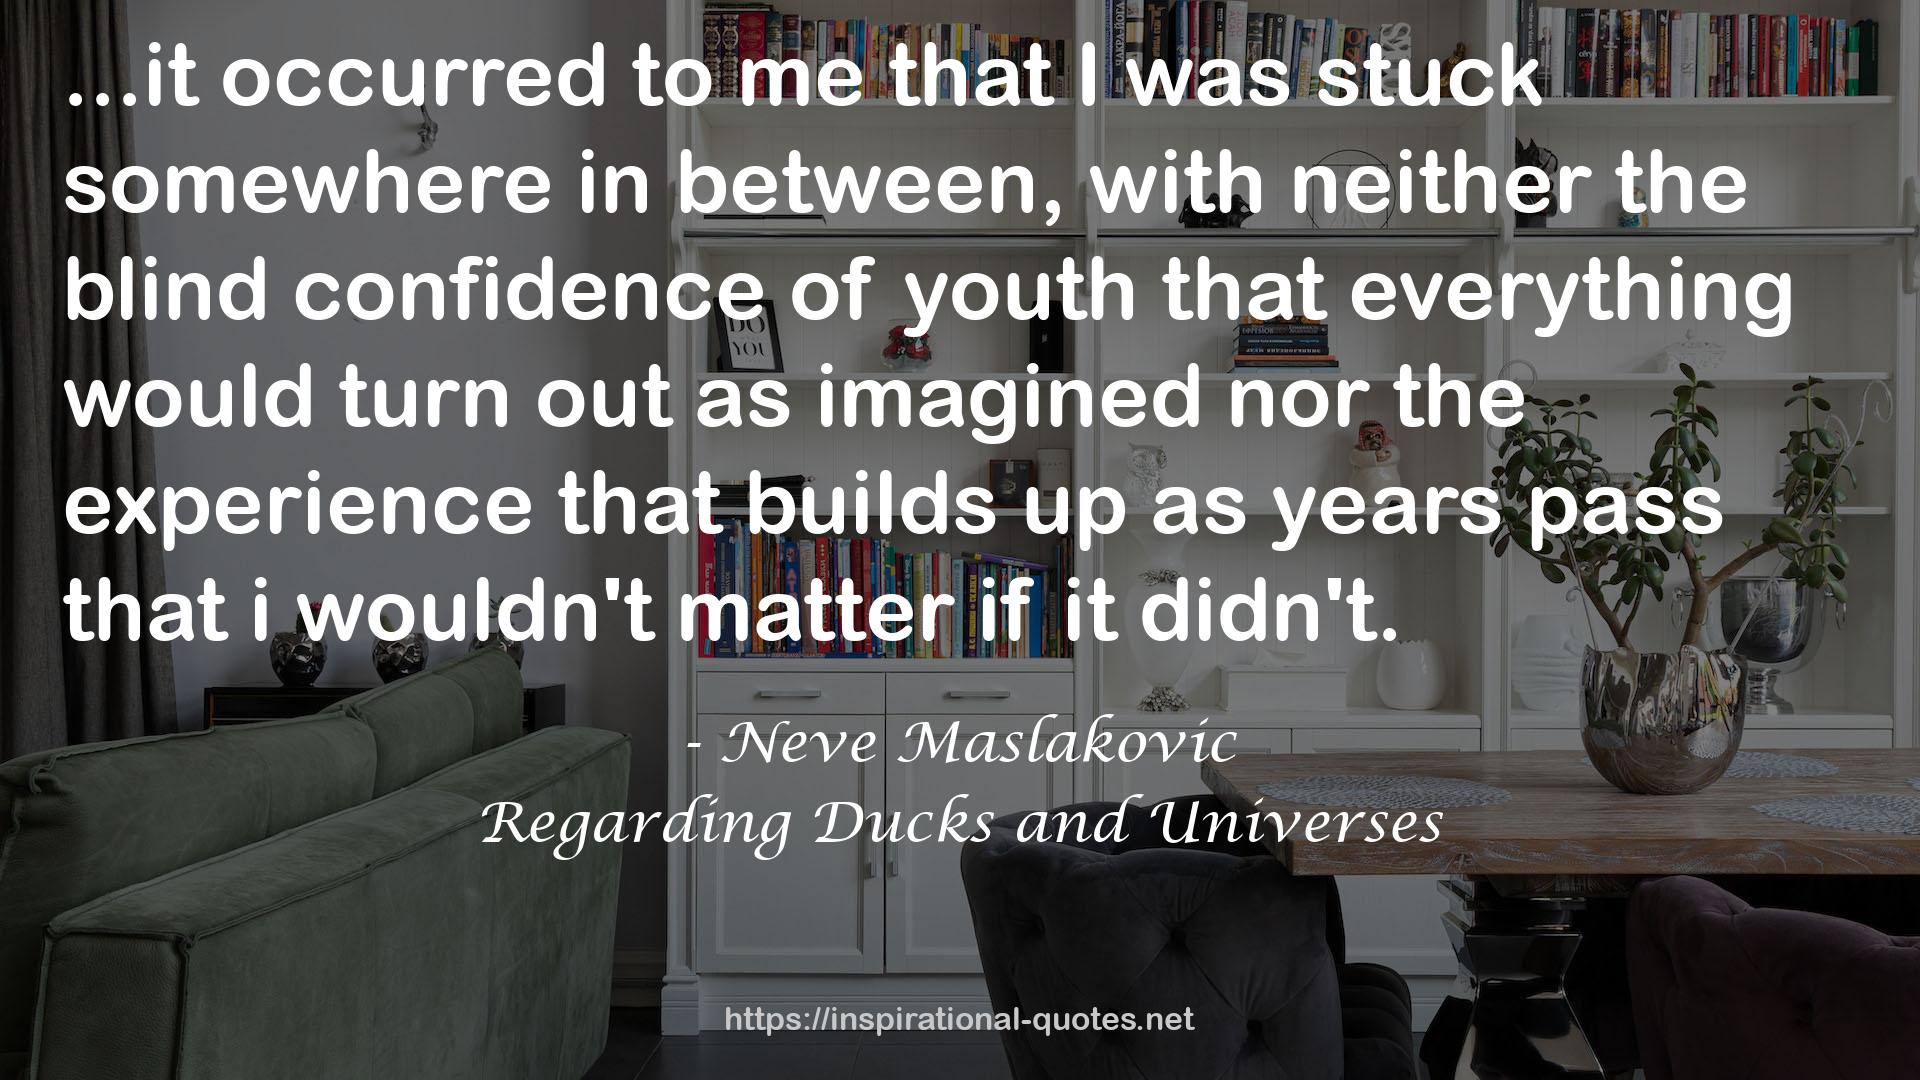 Regarding Ducks and Universes QUOTES